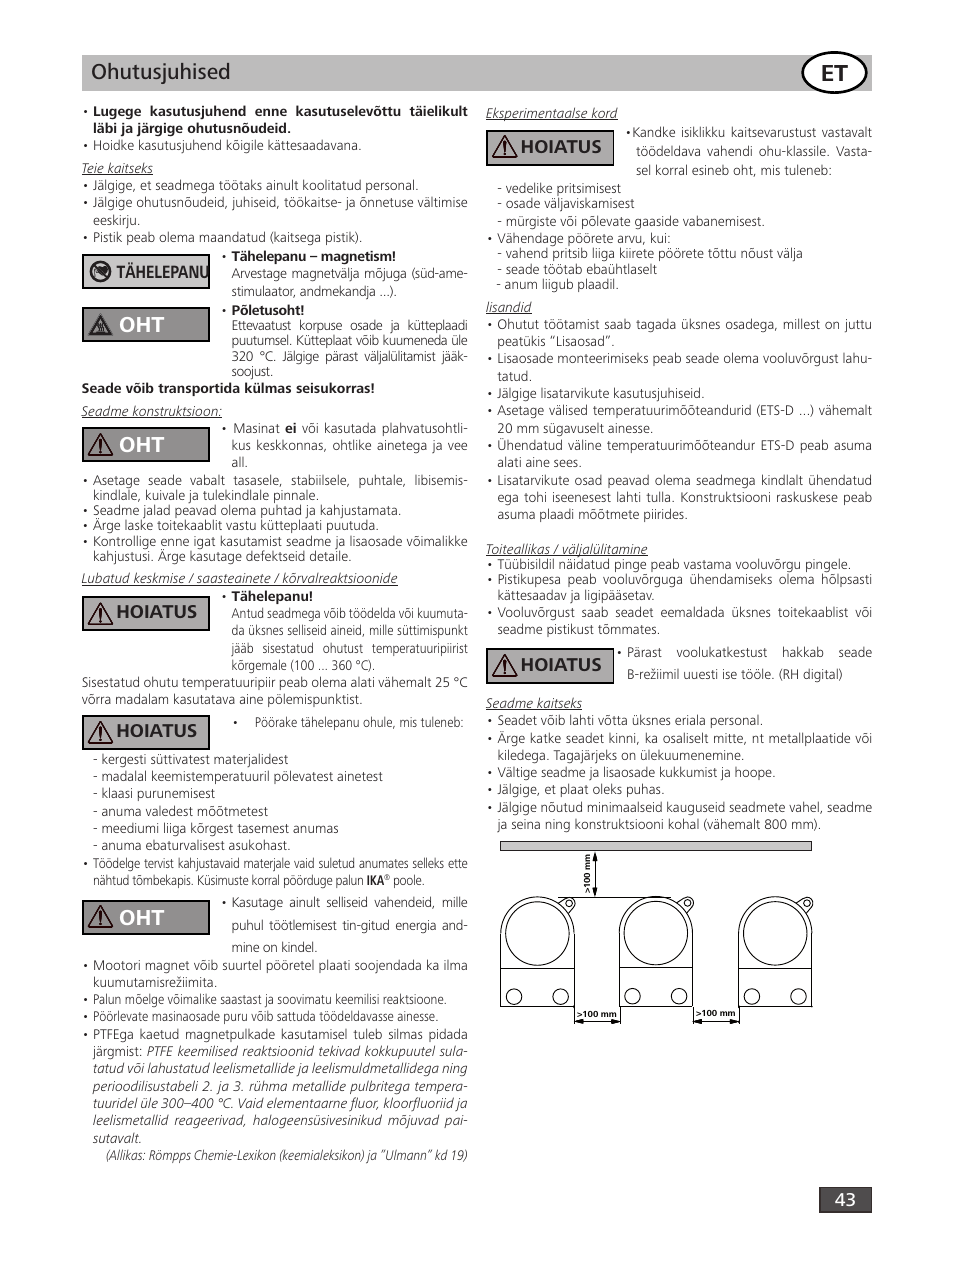 Ohutusjuhised, Hoiatus | IKA RH digital User Manual | Page 43 / 52